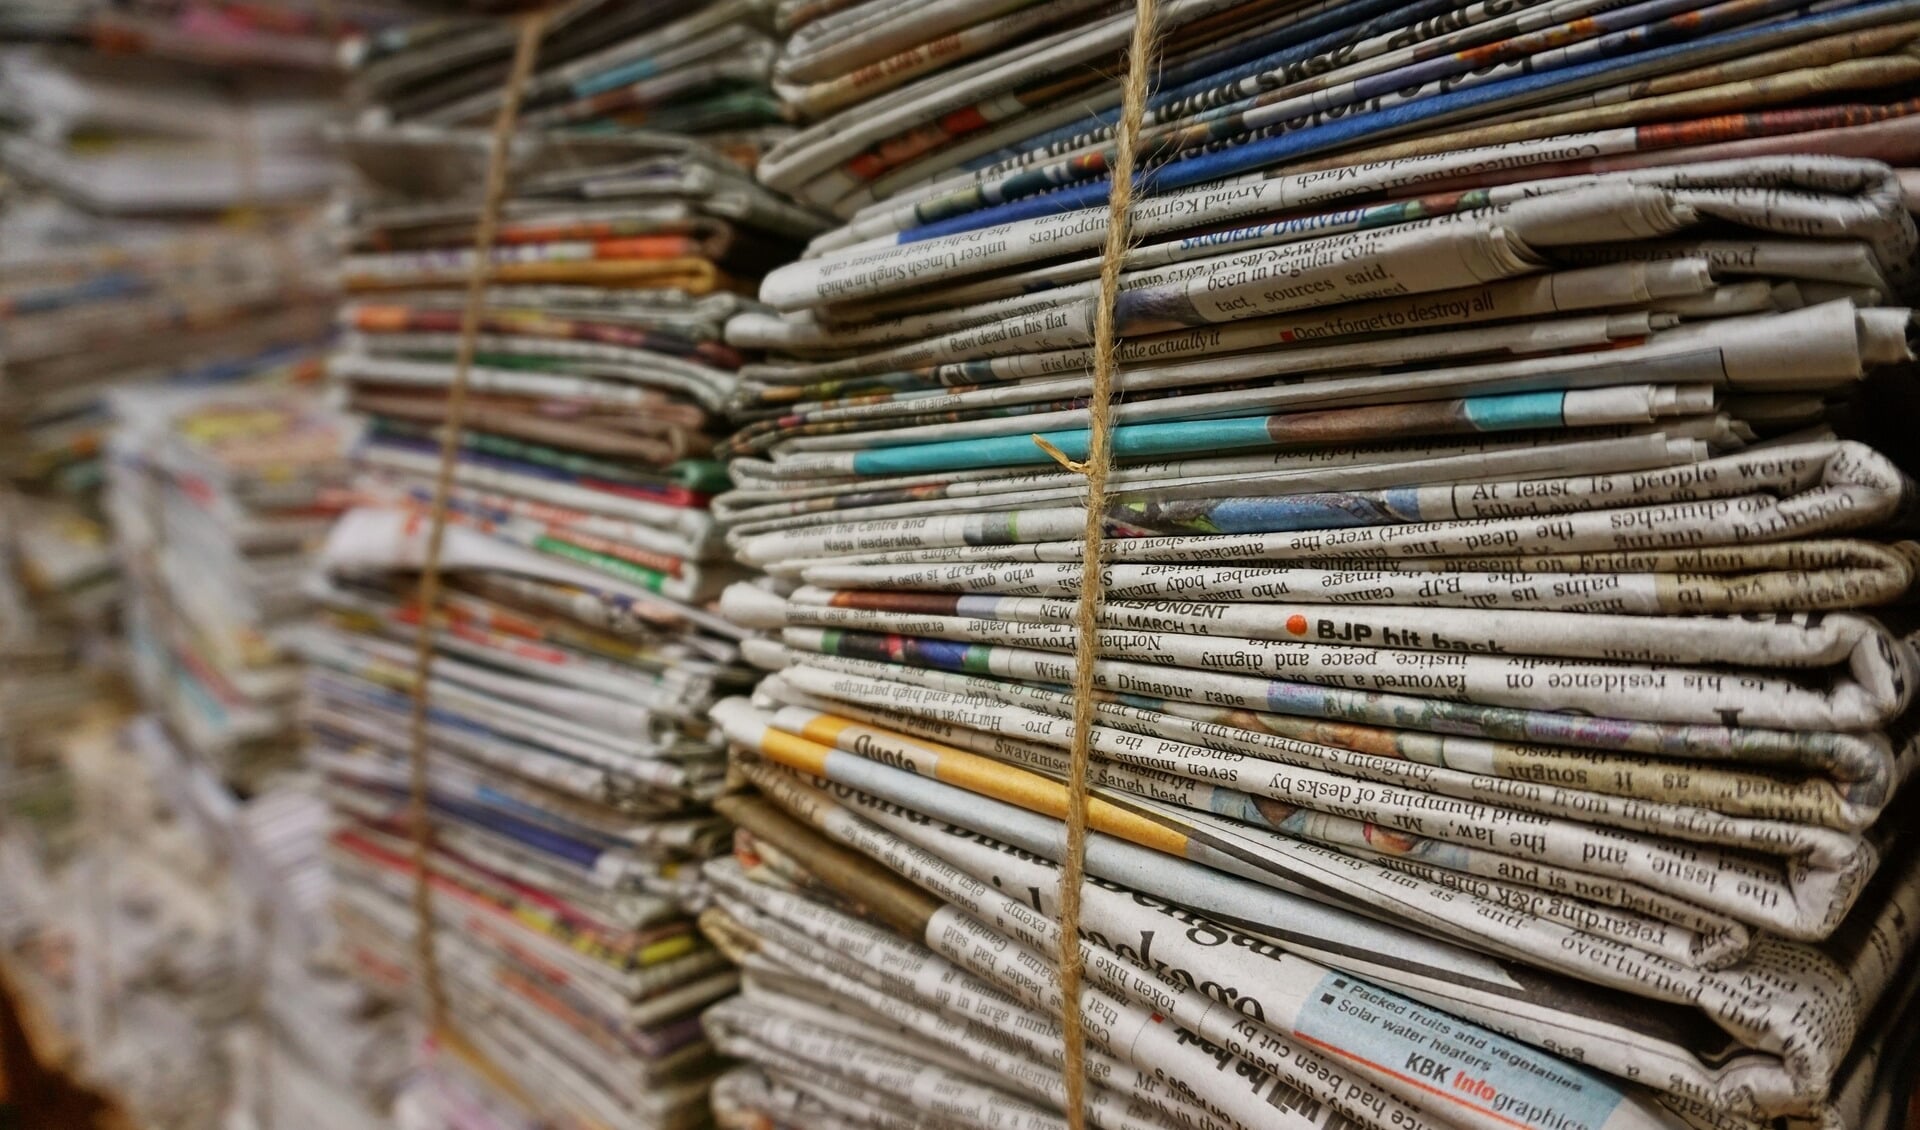 Stapels oude kranten, foto ter illustratie.